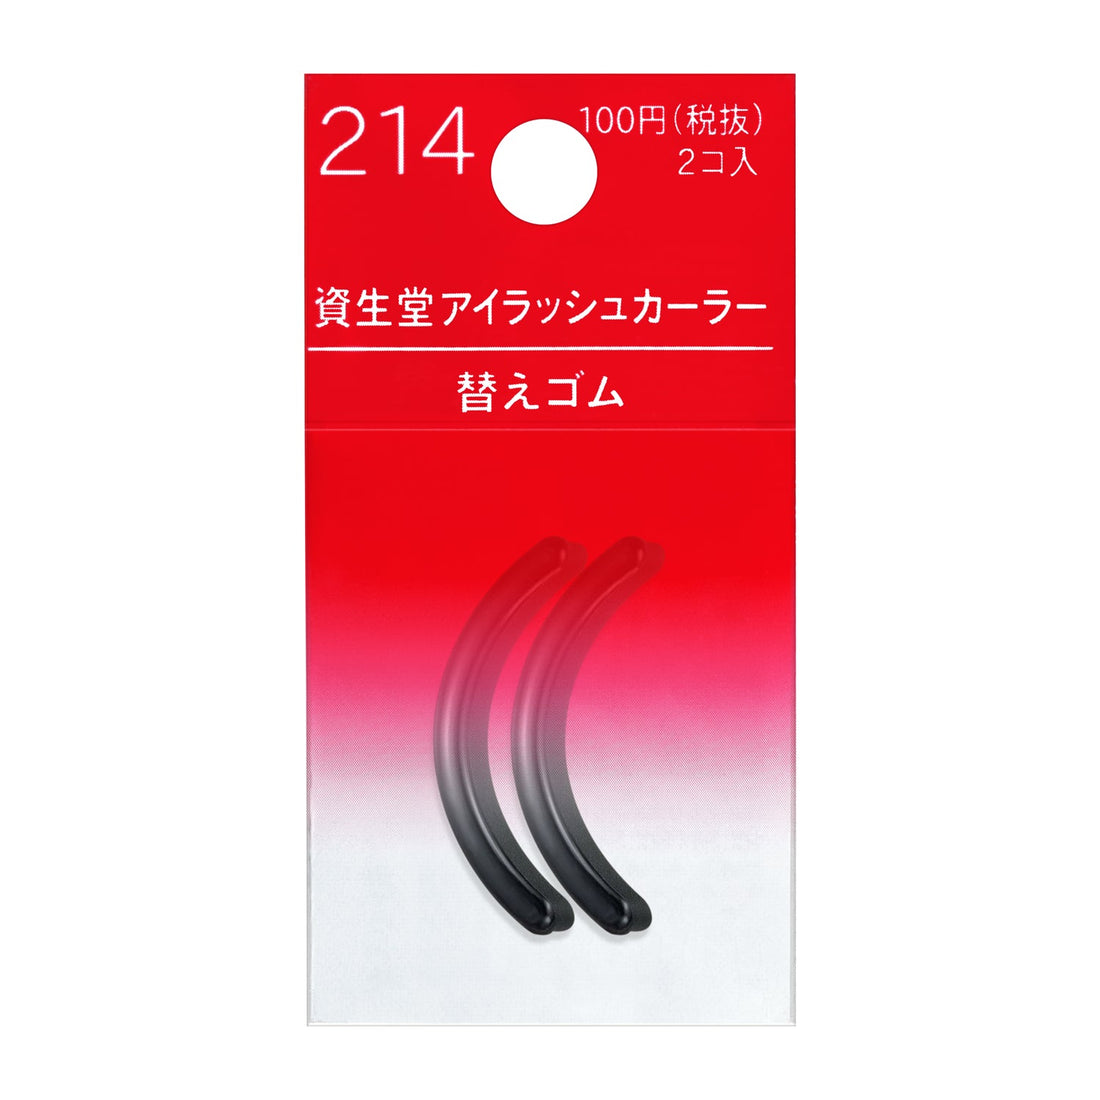 Shiseido Eyelash Curler Refill Pads 214